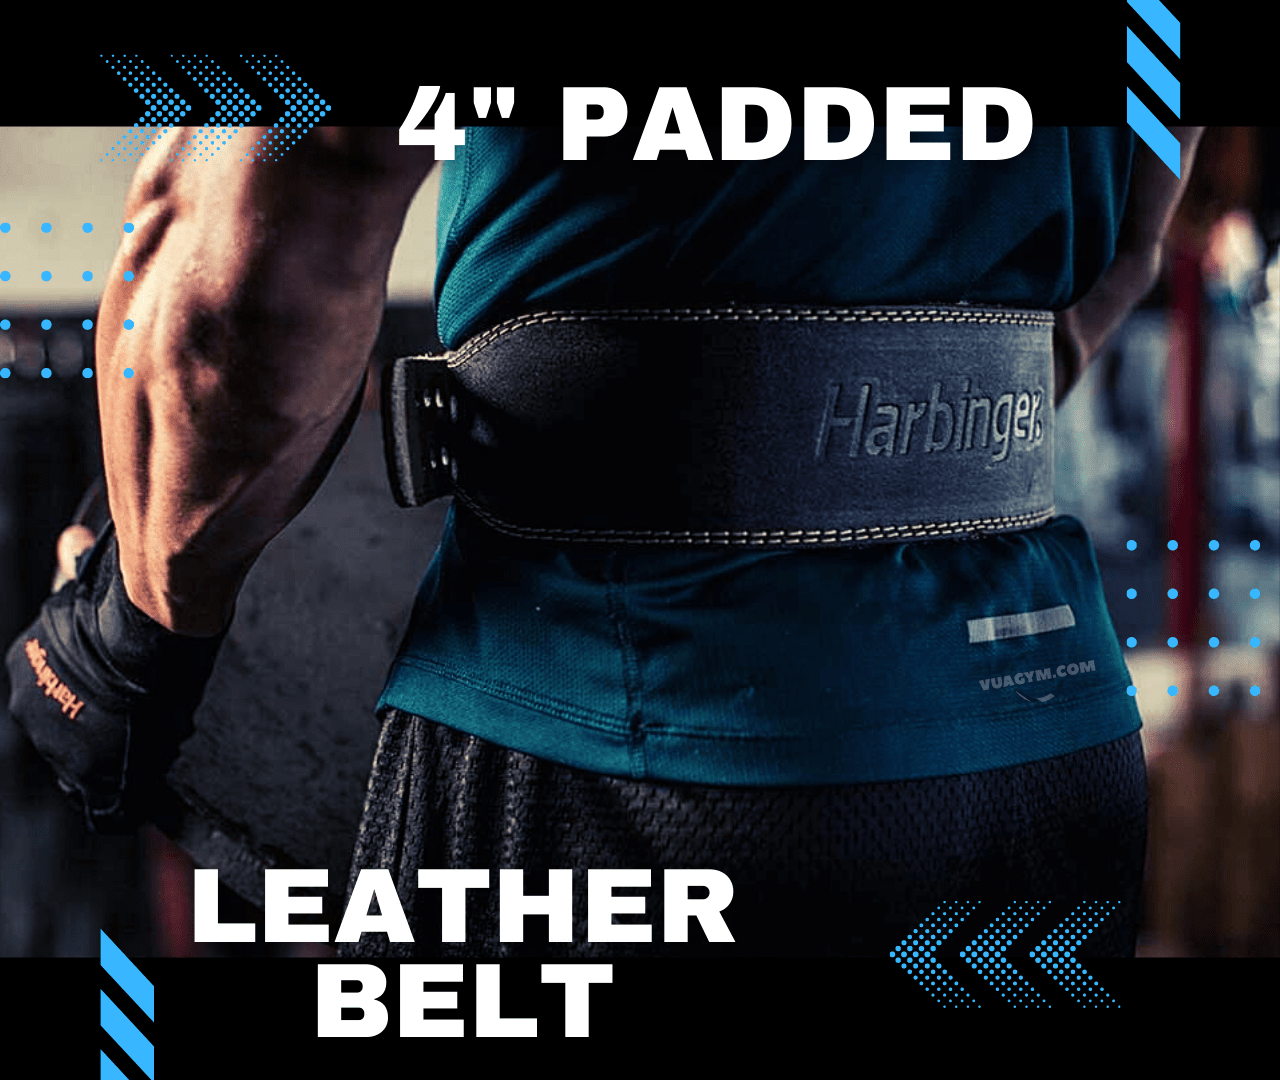 Harbinger - 4" Padded Leather Belt - 4 padded